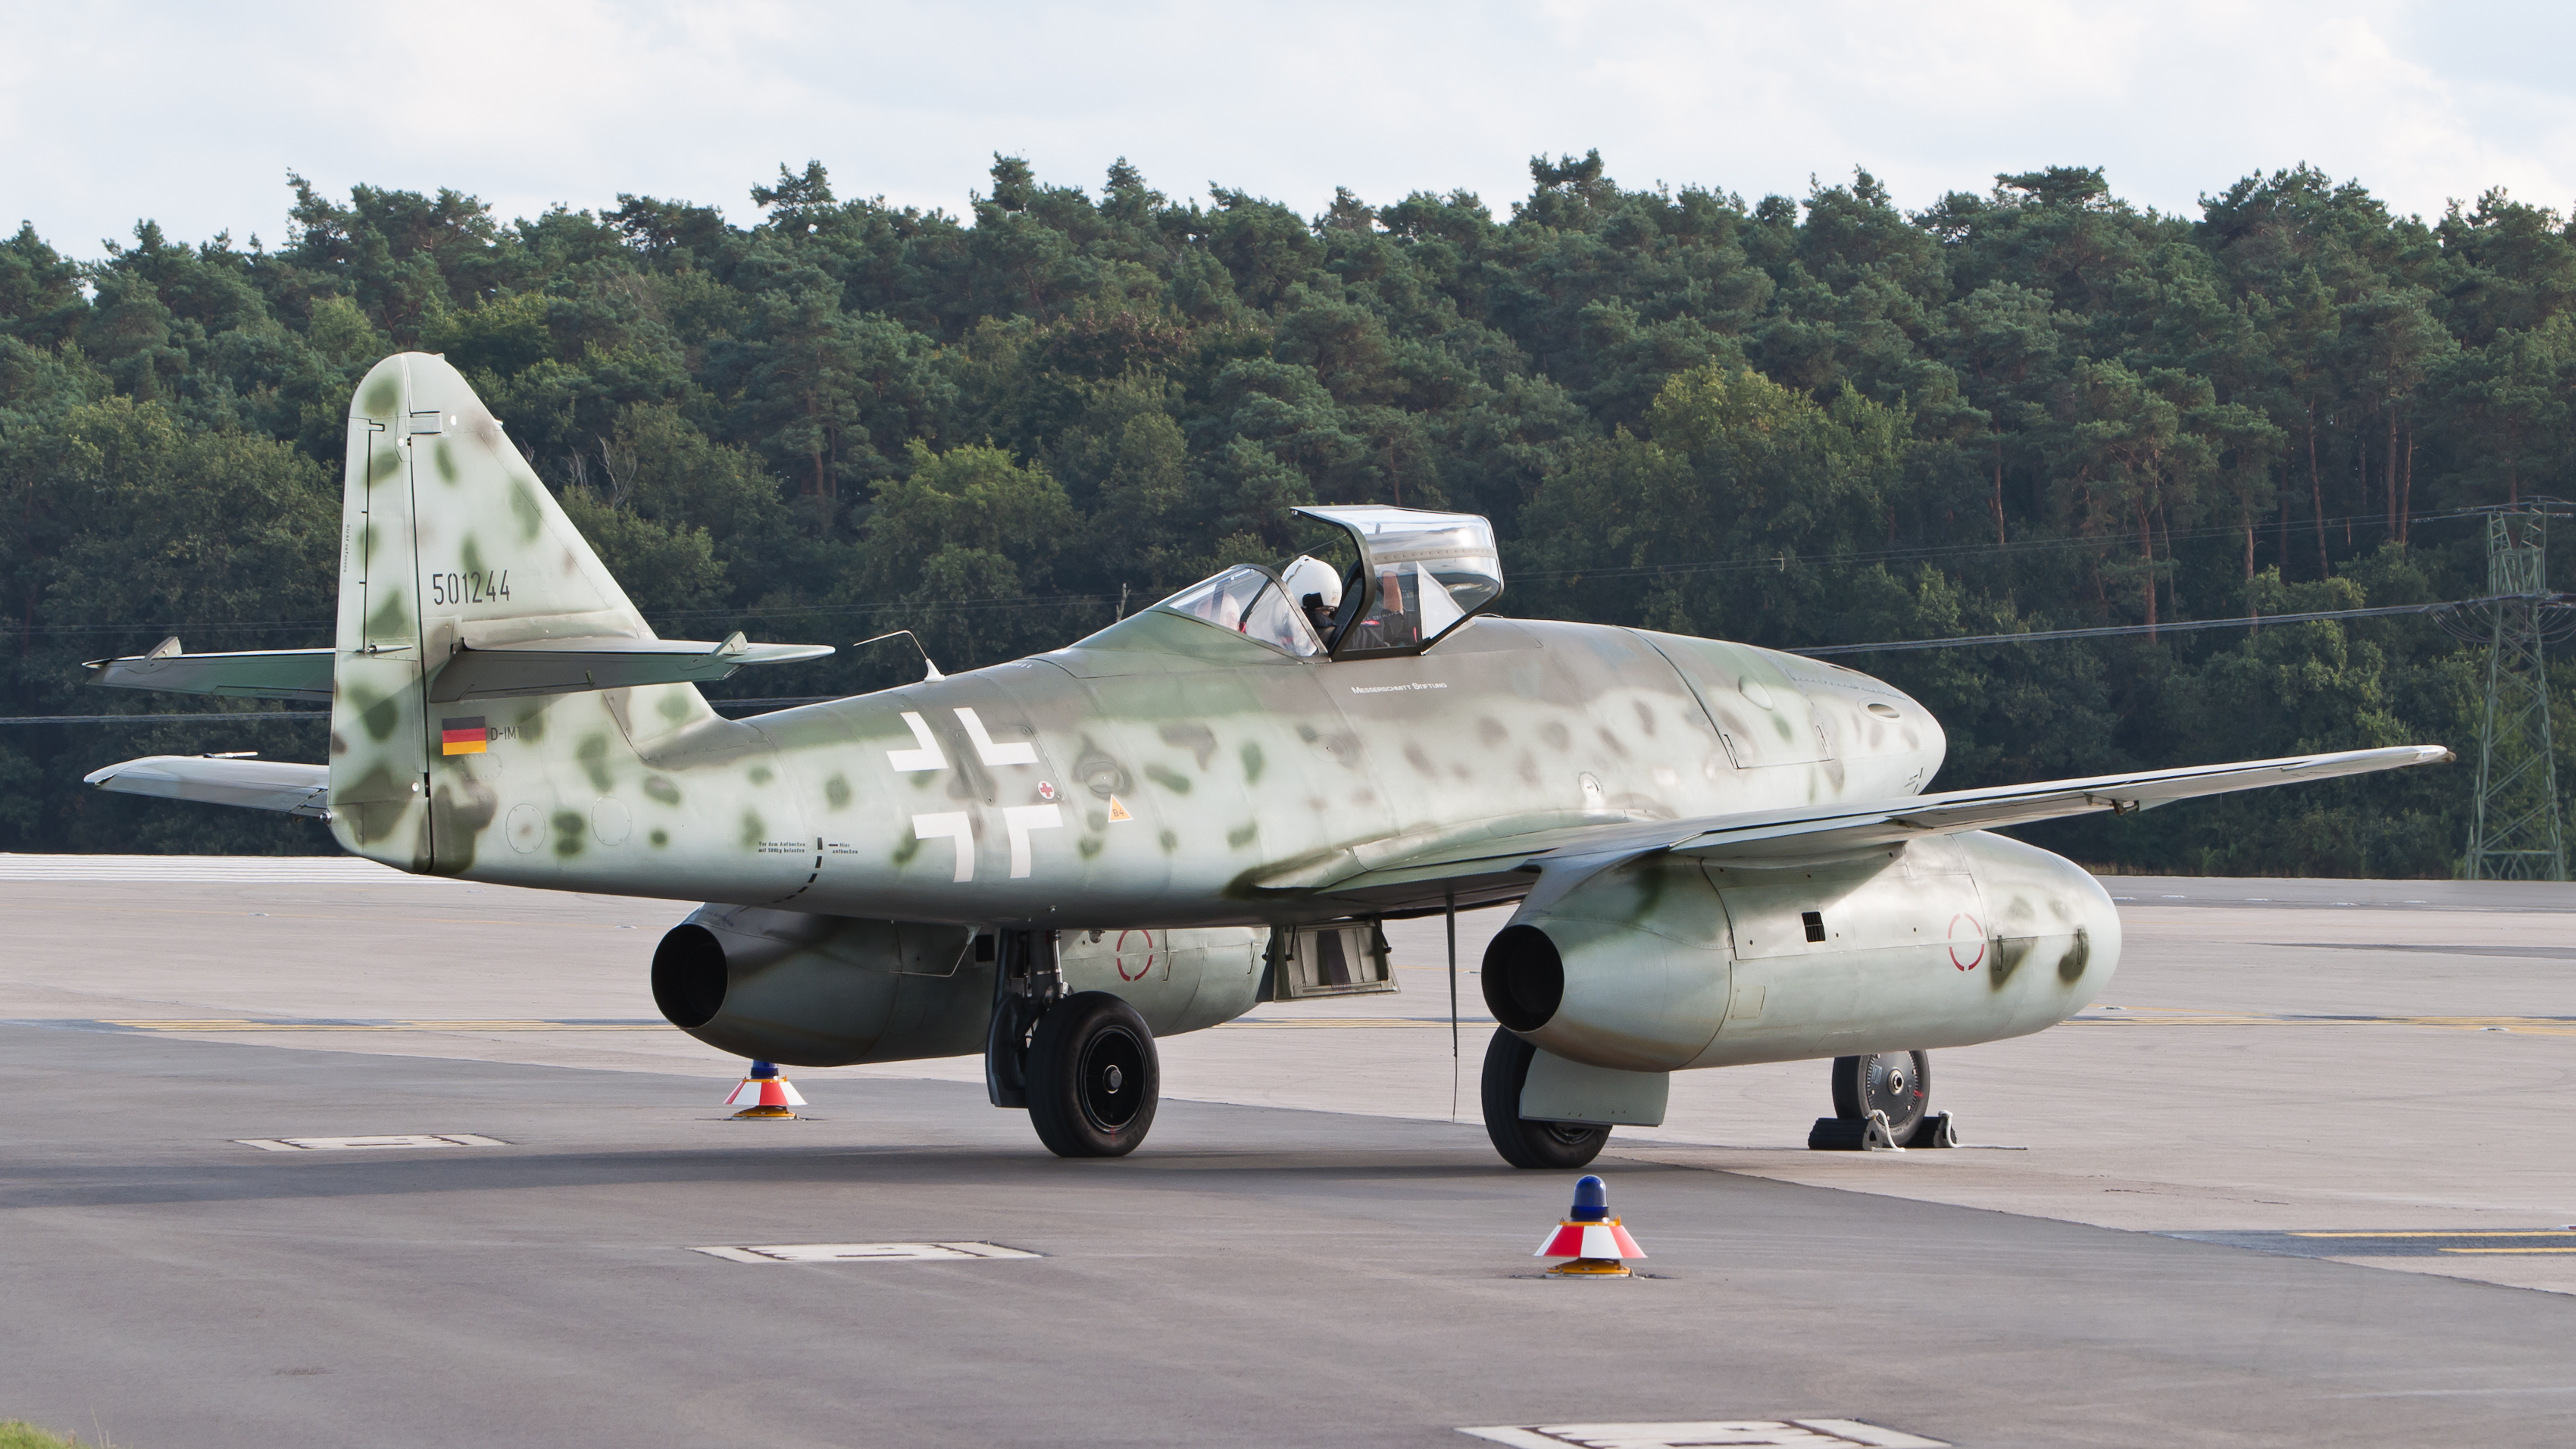 Messerschmitt Me 262 wallpapers, Military, HQ Messerschmitt Me 262 ...